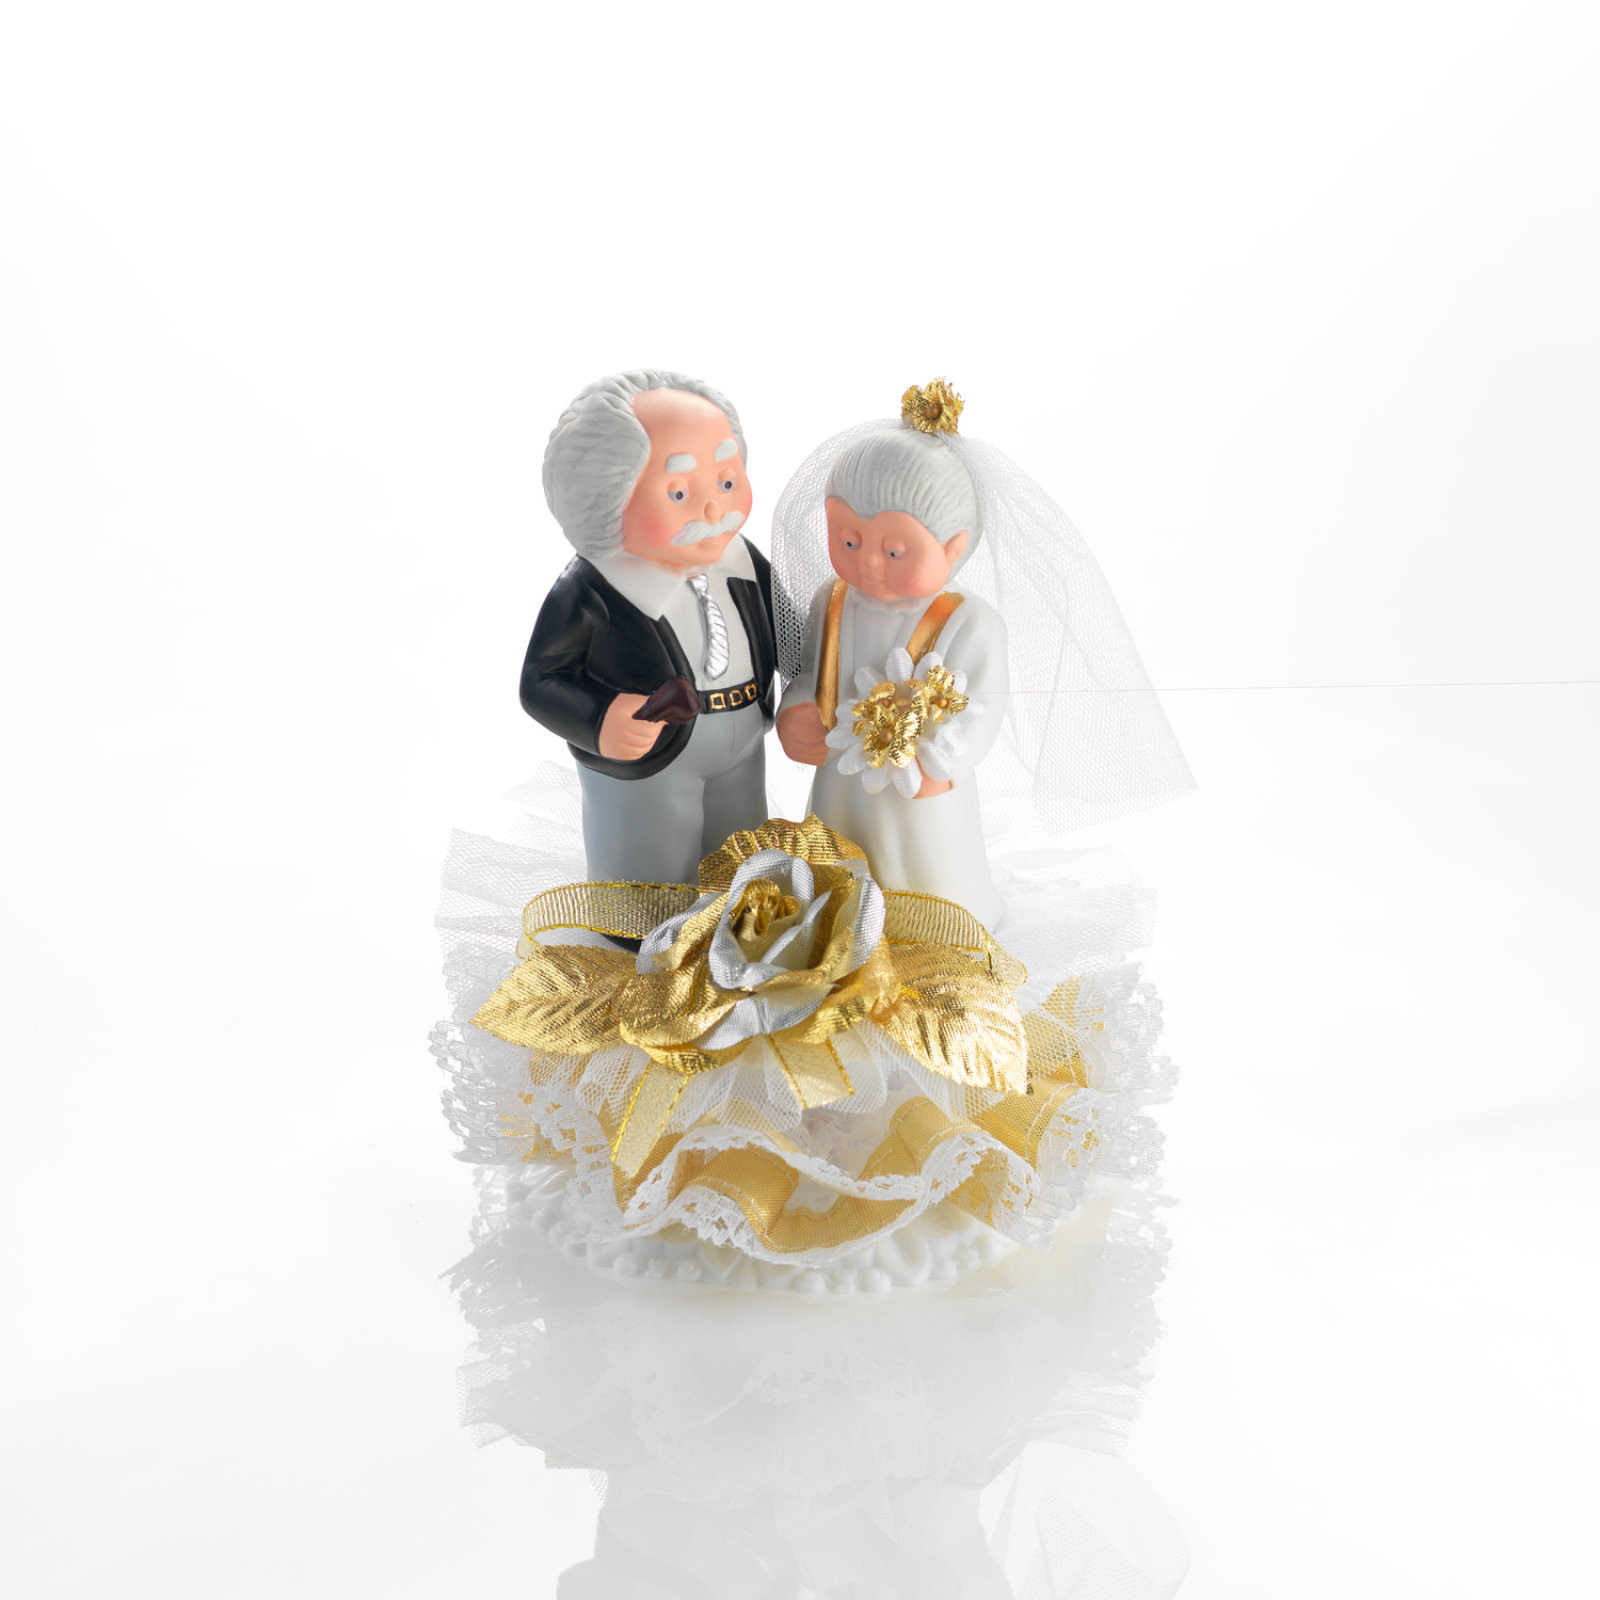 Goldene Hochzeit Ideen
 Brautpaar zur goldenen Hochzeit Porzellan